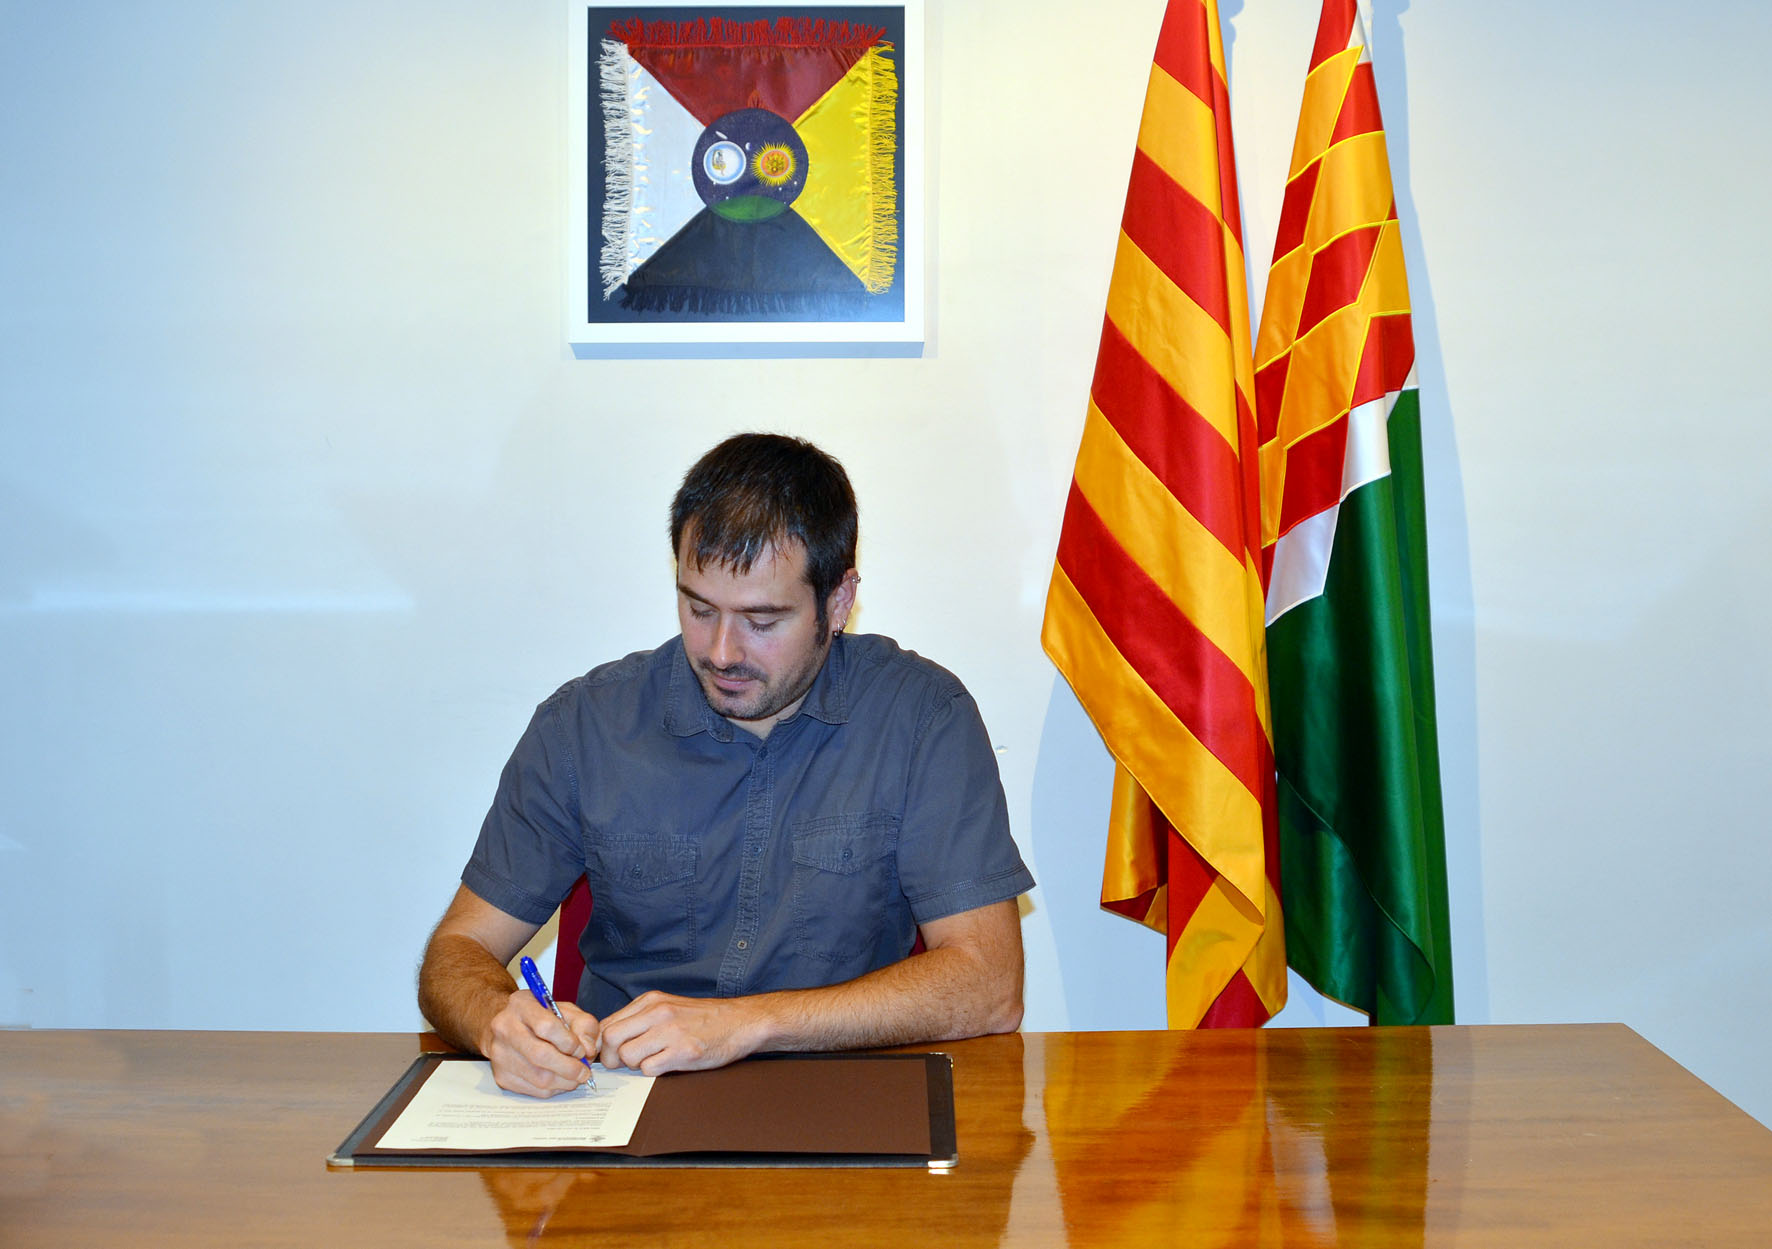 L'alcalde de Cerdanyola del Vallès signa un decret en suport al referèndum de l'1 d'octubre